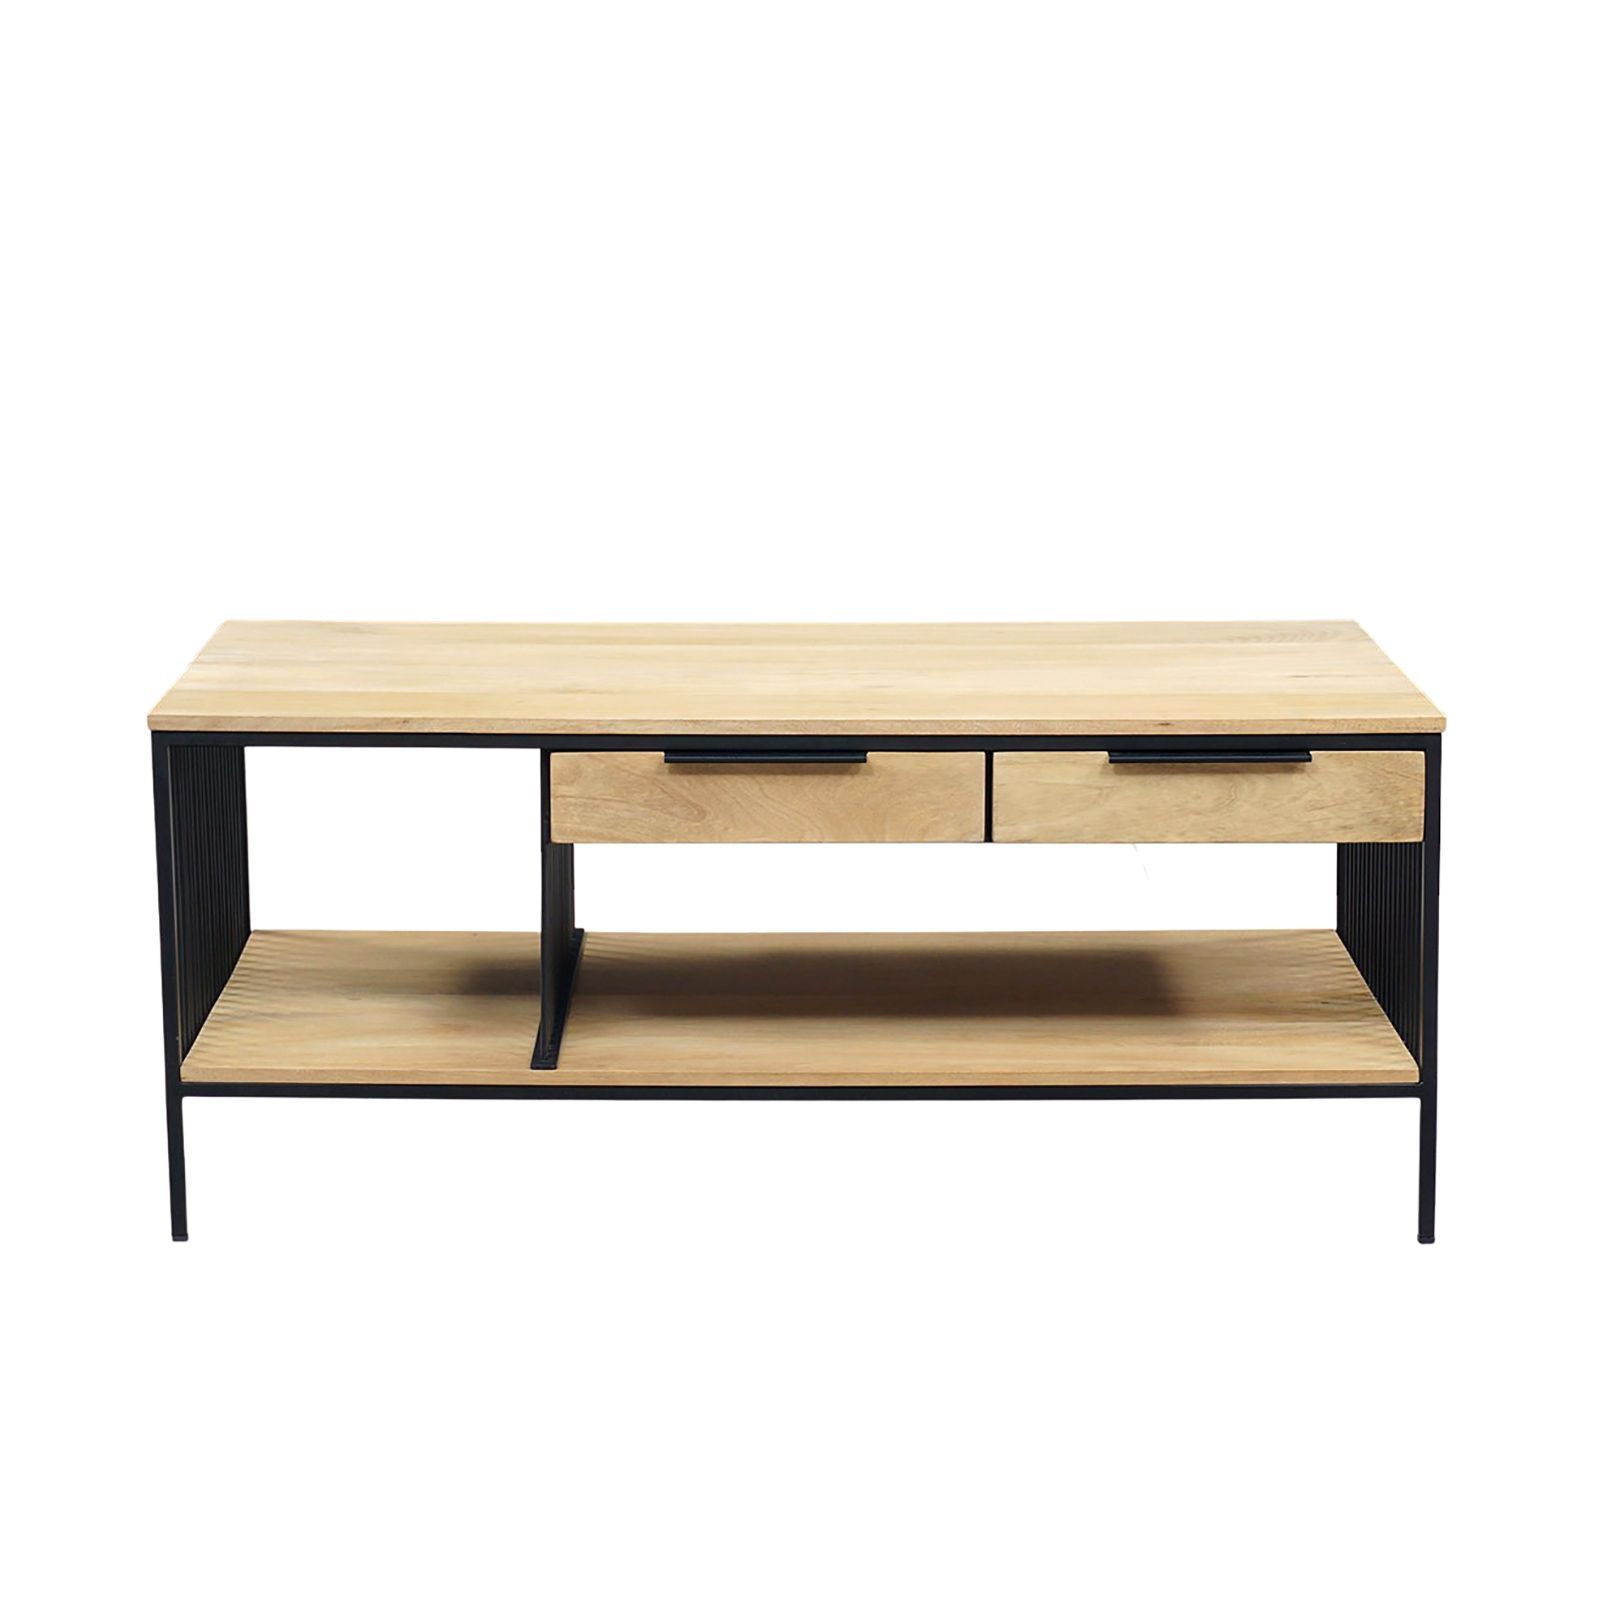 Table basse rectangulaire industrielle fer et bois